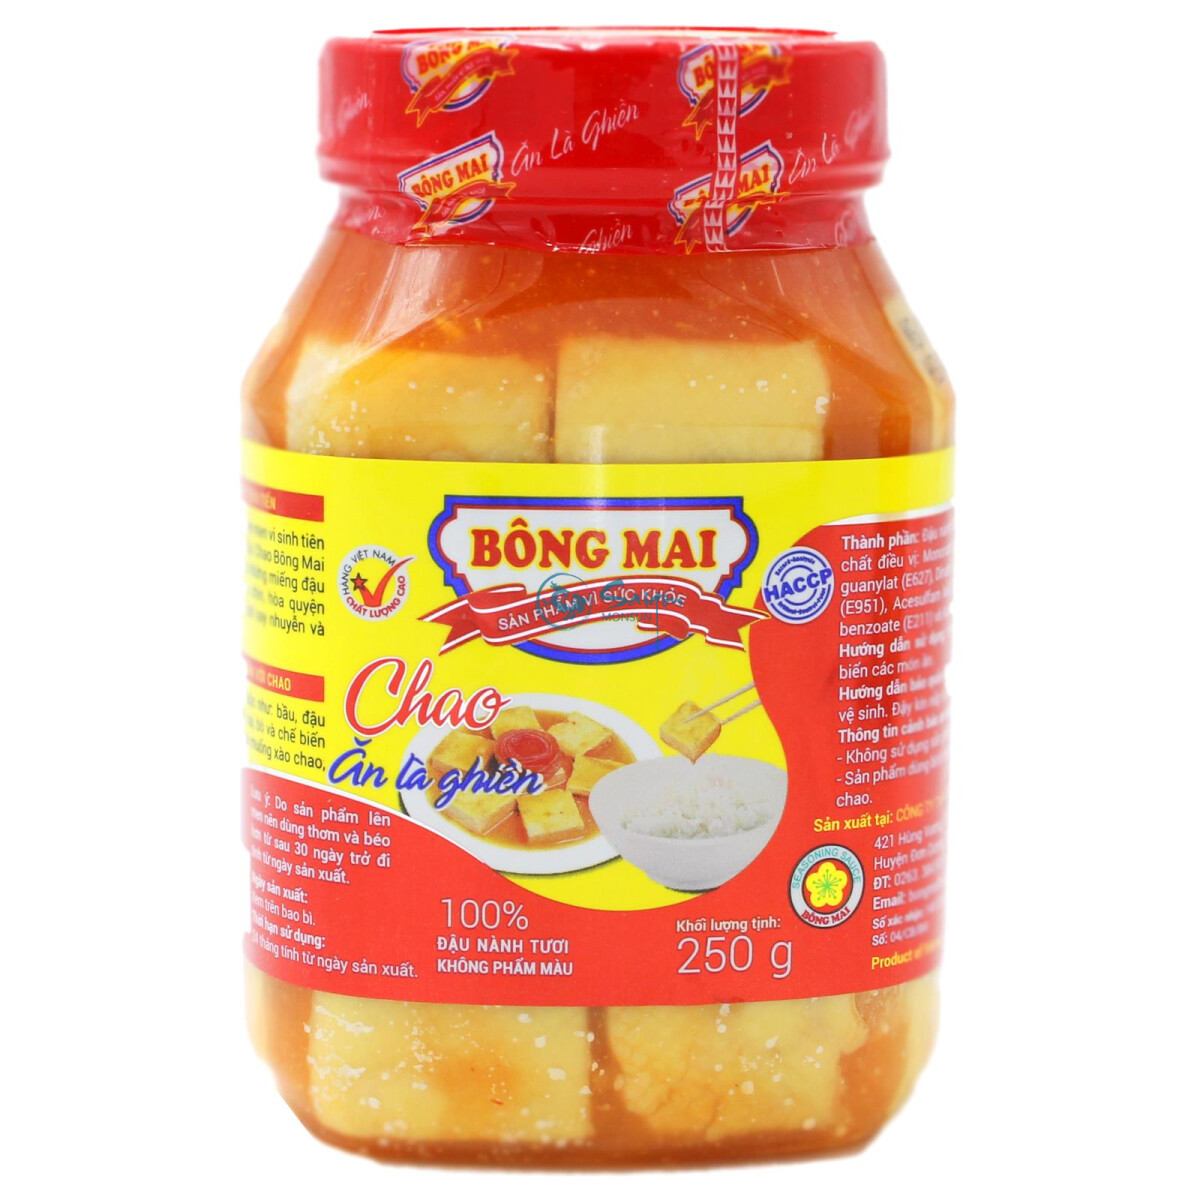 Bong Mai Chao Chili Bean Curd 250g